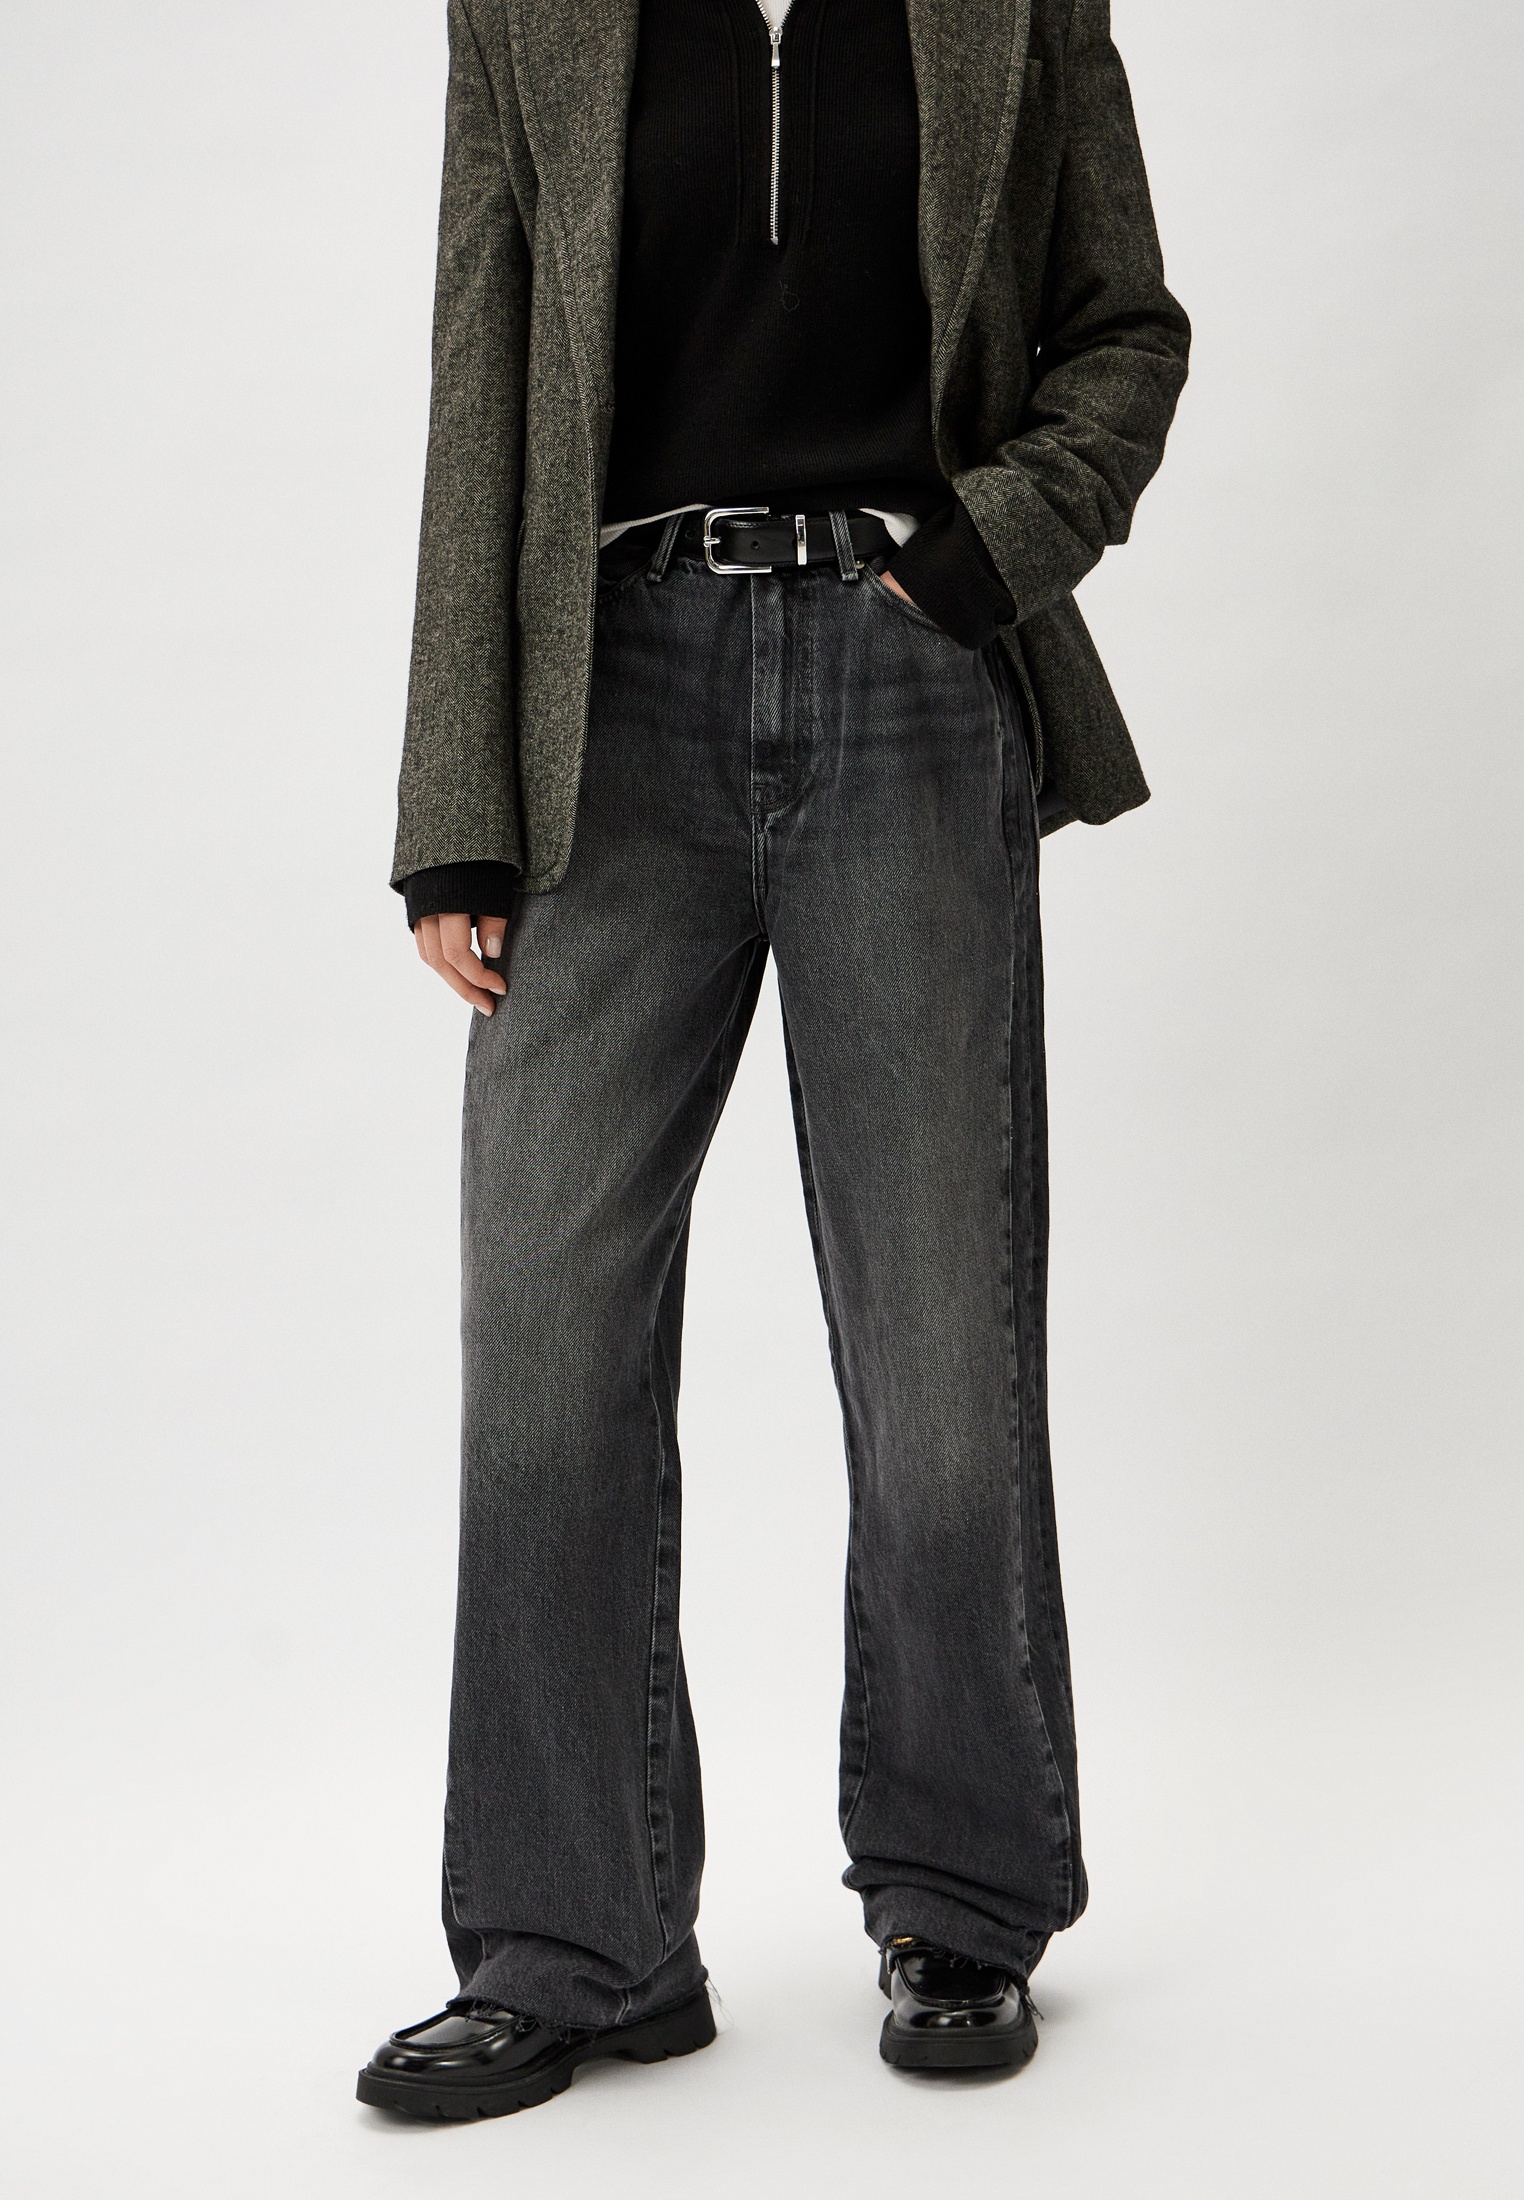 Широкие и расклешенные джинсы Tommy Hilfiger (Томми Хилфигер) WW0WW40622